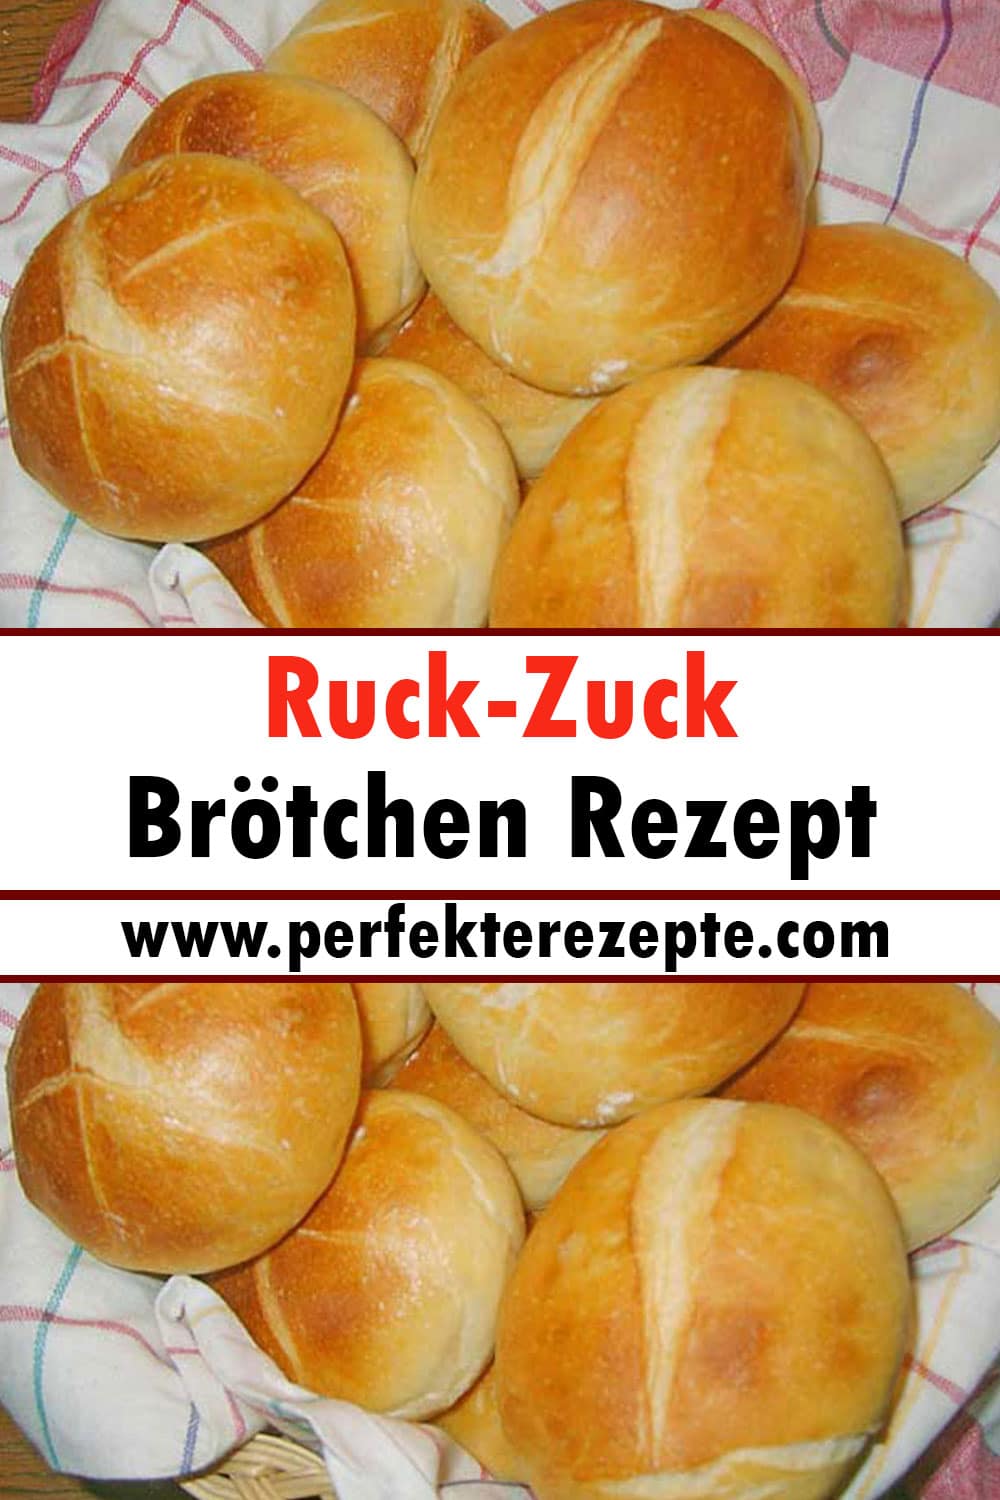 Ruck-Zuck Brötchen Rezept